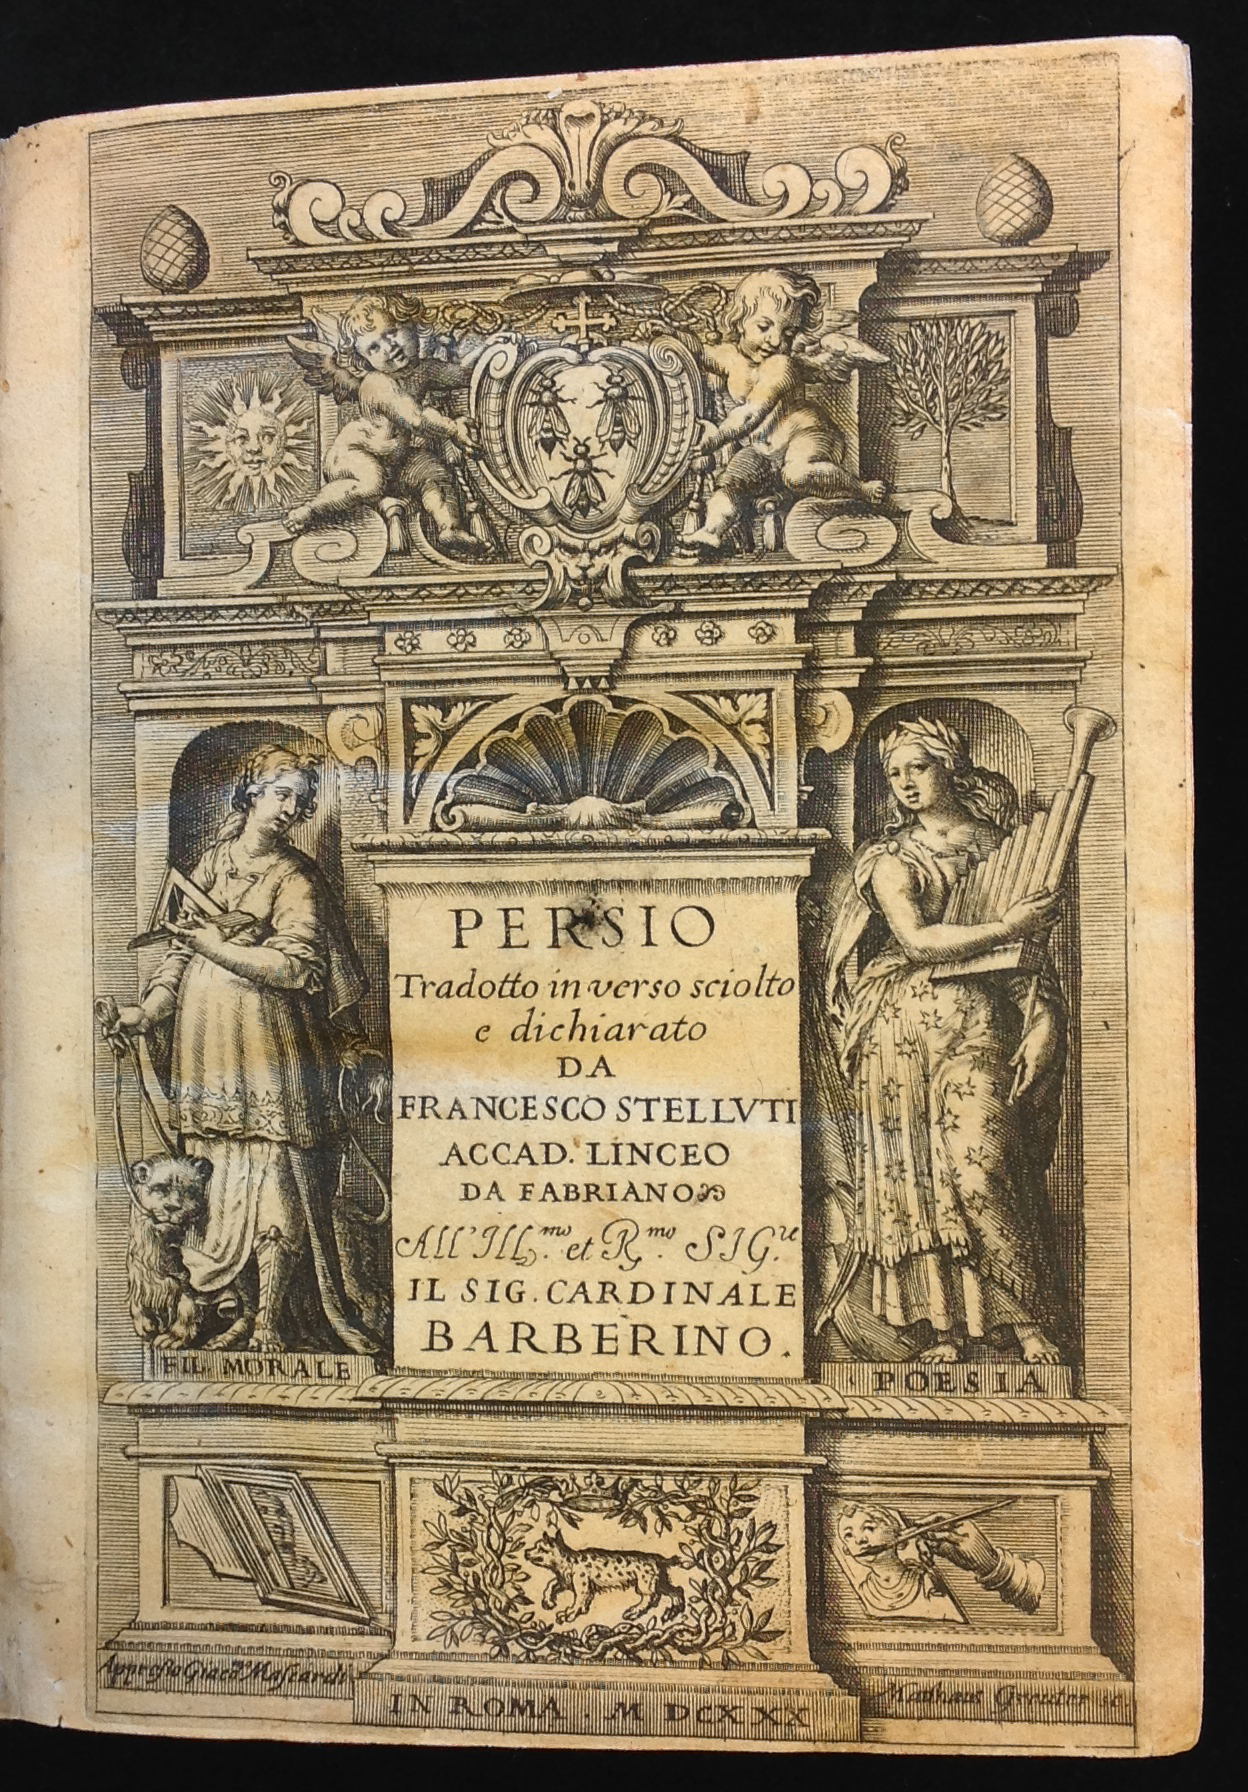 Persio tradotto in verso sciolto e dichiarato da Francesco Stelluti. Roma: Giacomo Mascardi, 1630.